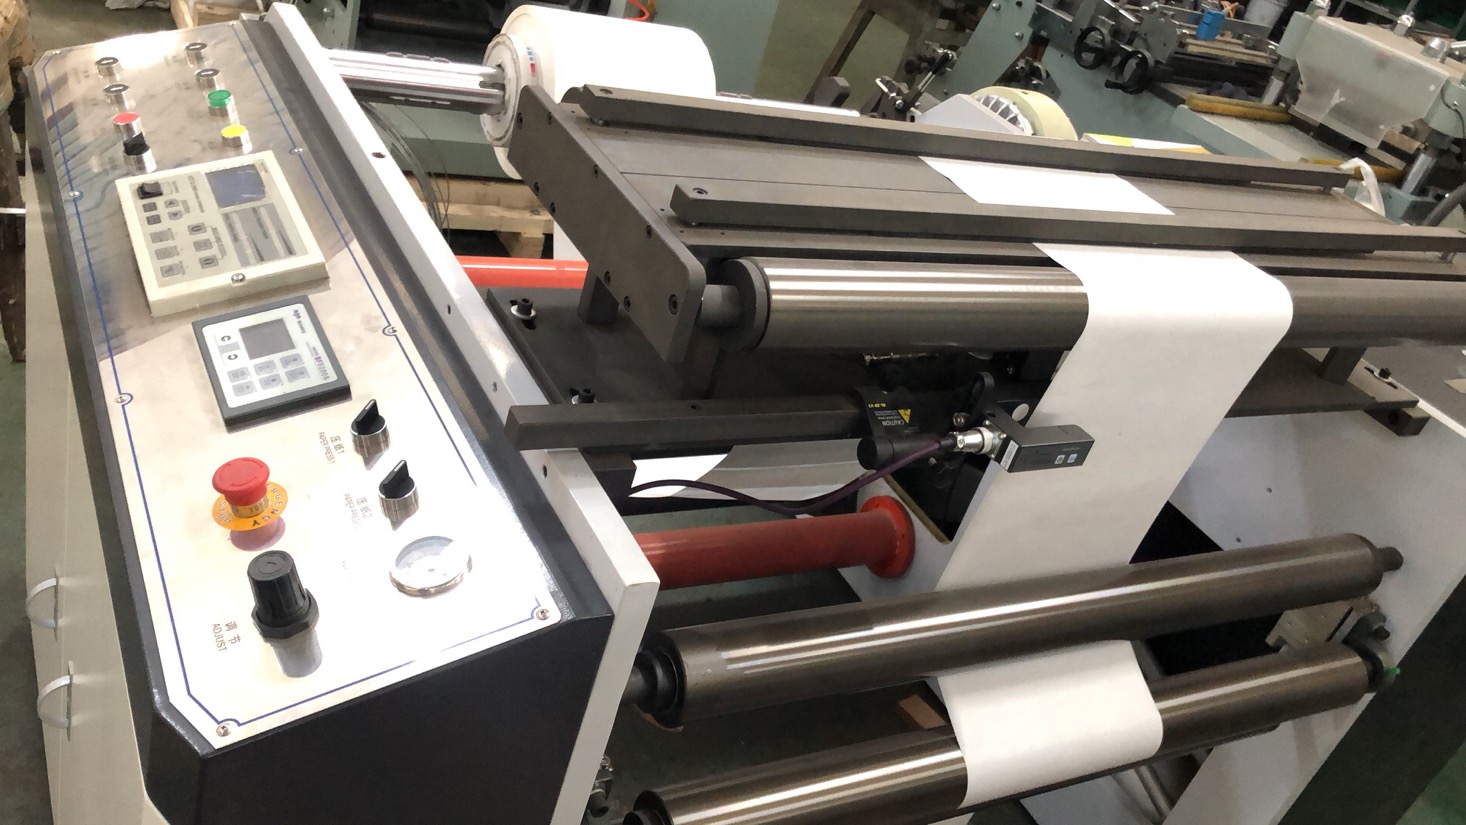 Máquina de impresión flexográfica para embalaje de papel médico HJ-950